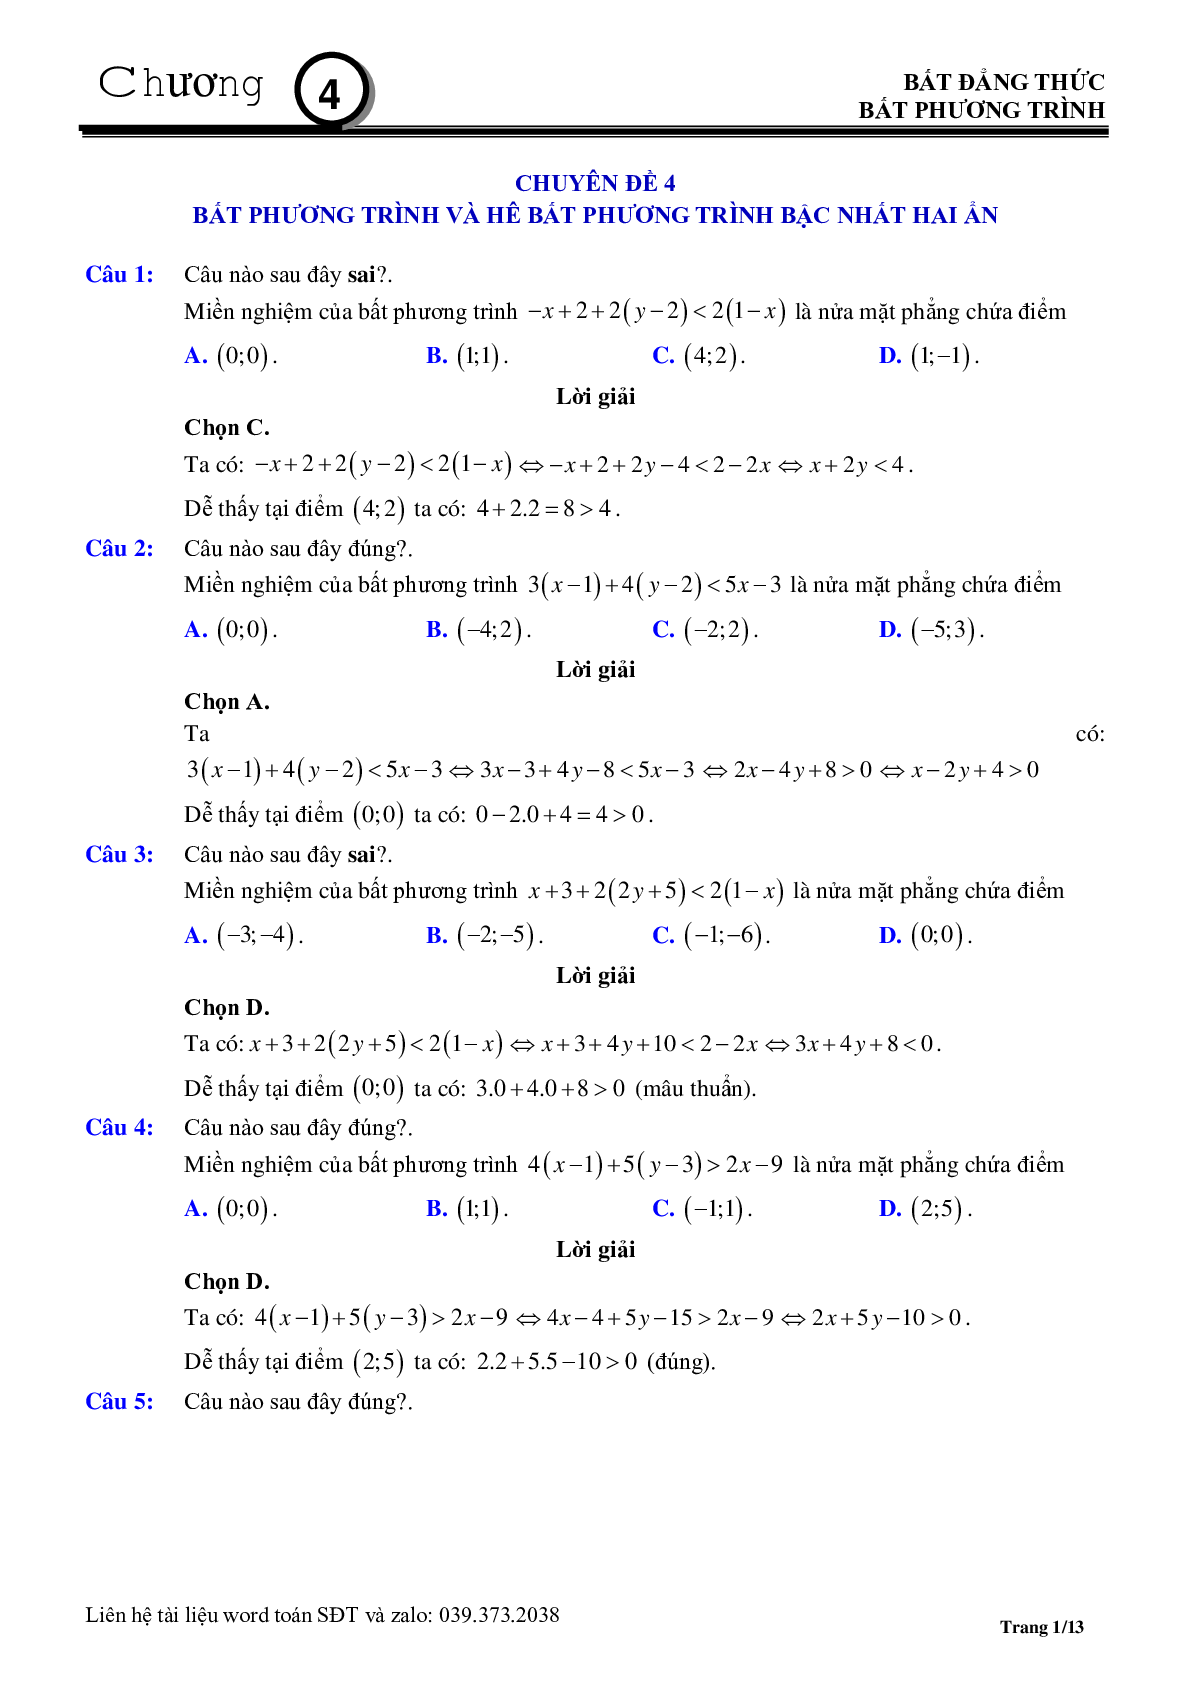 Chuyên đề bất phương trình, hệ phương trình bậc nhất hai ẩn (trang 1)